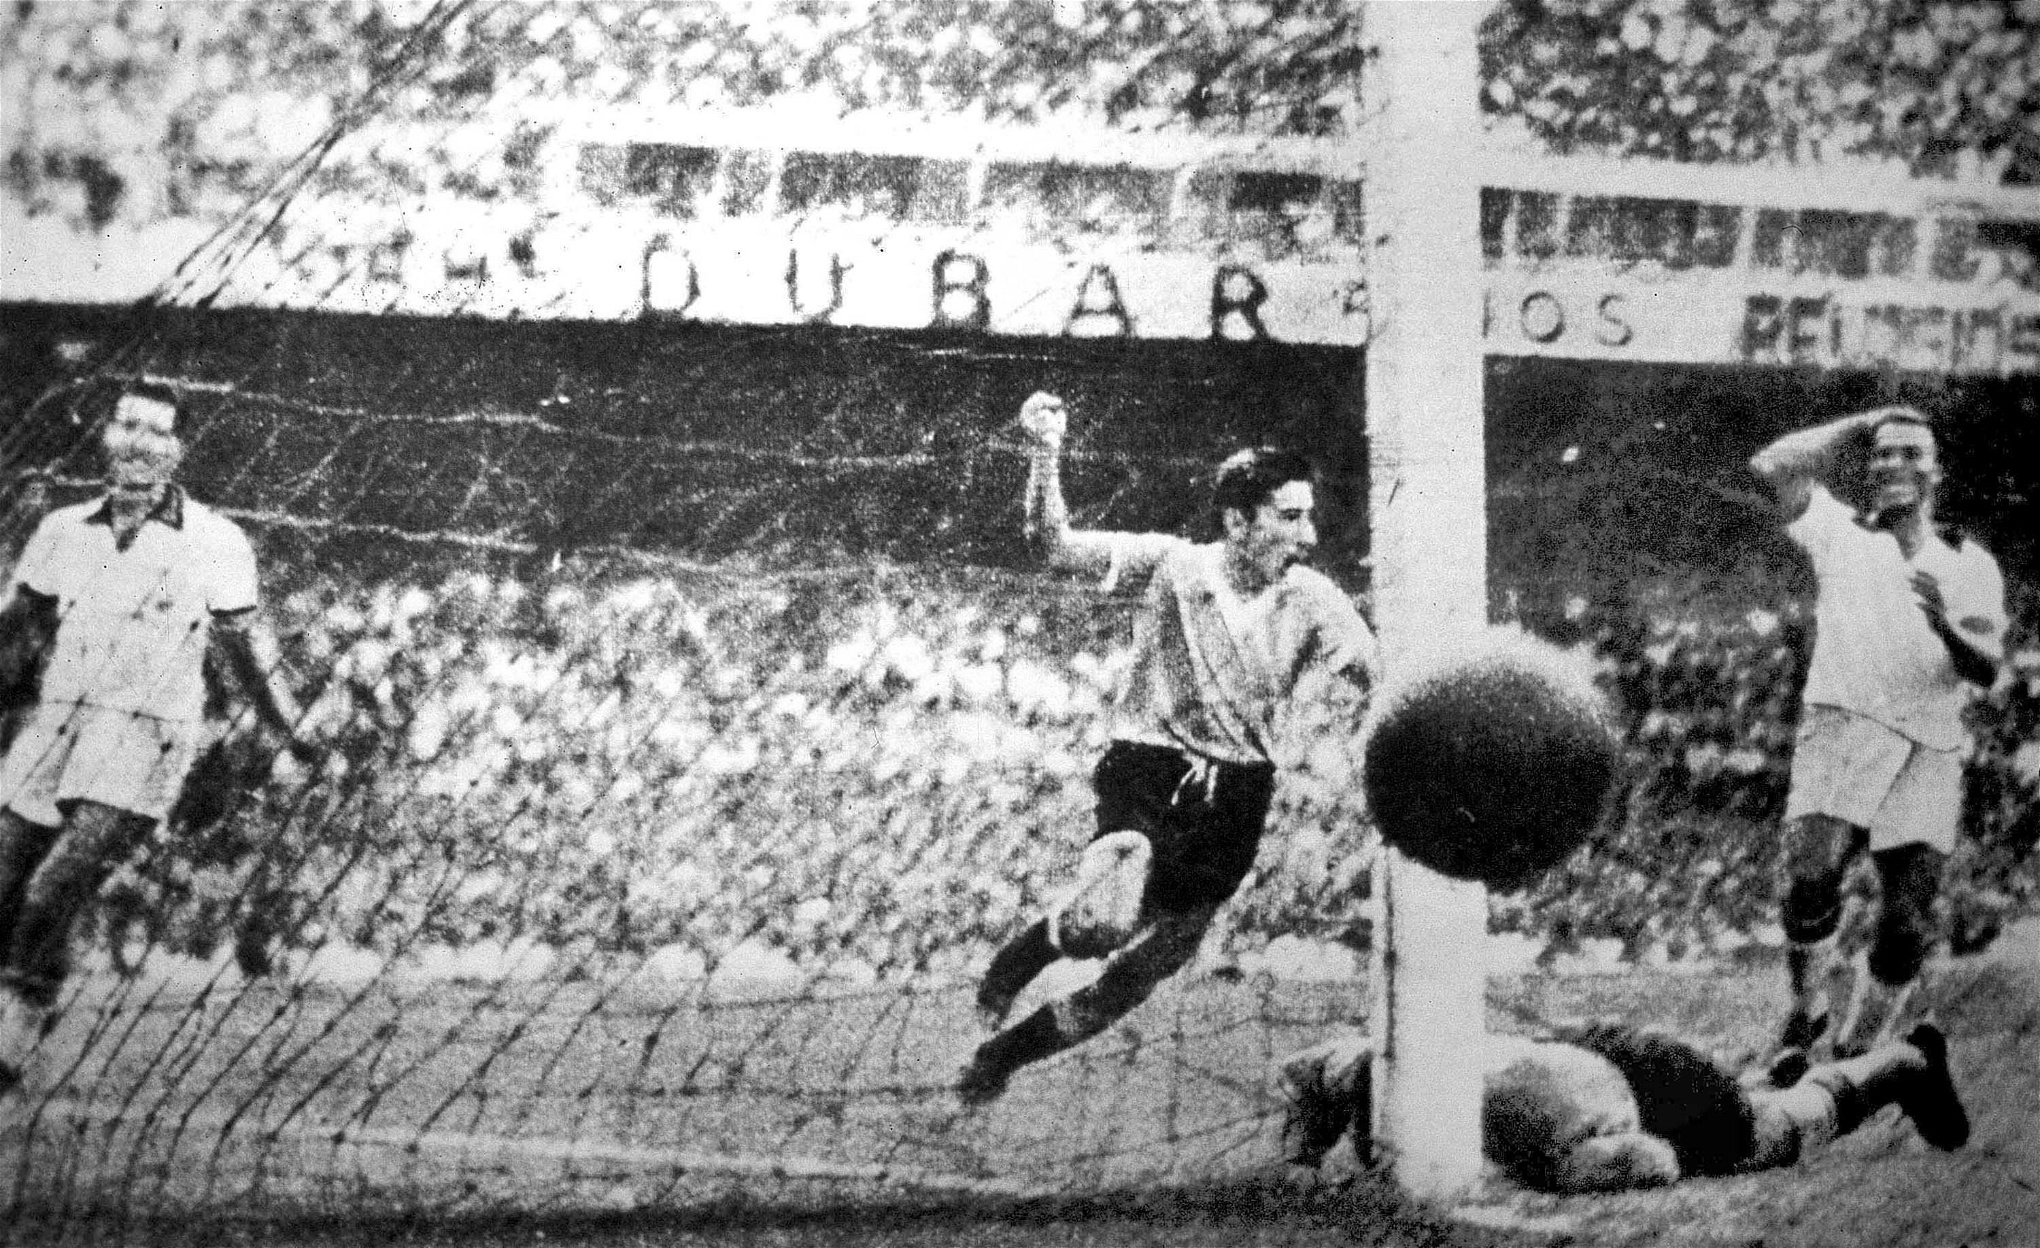 Storhetsvansinnet i Brasiliens byggpolitik kan spåras till fotbolls-VM 1950 då fotbollsarenan Maracanã i Rio de Janeiro byggdes, med plats för 180 000 åskådare. Här finalen mellan Uruguay och Brasilien den 16 juli 1950. Uruguay vann med 2-1. 